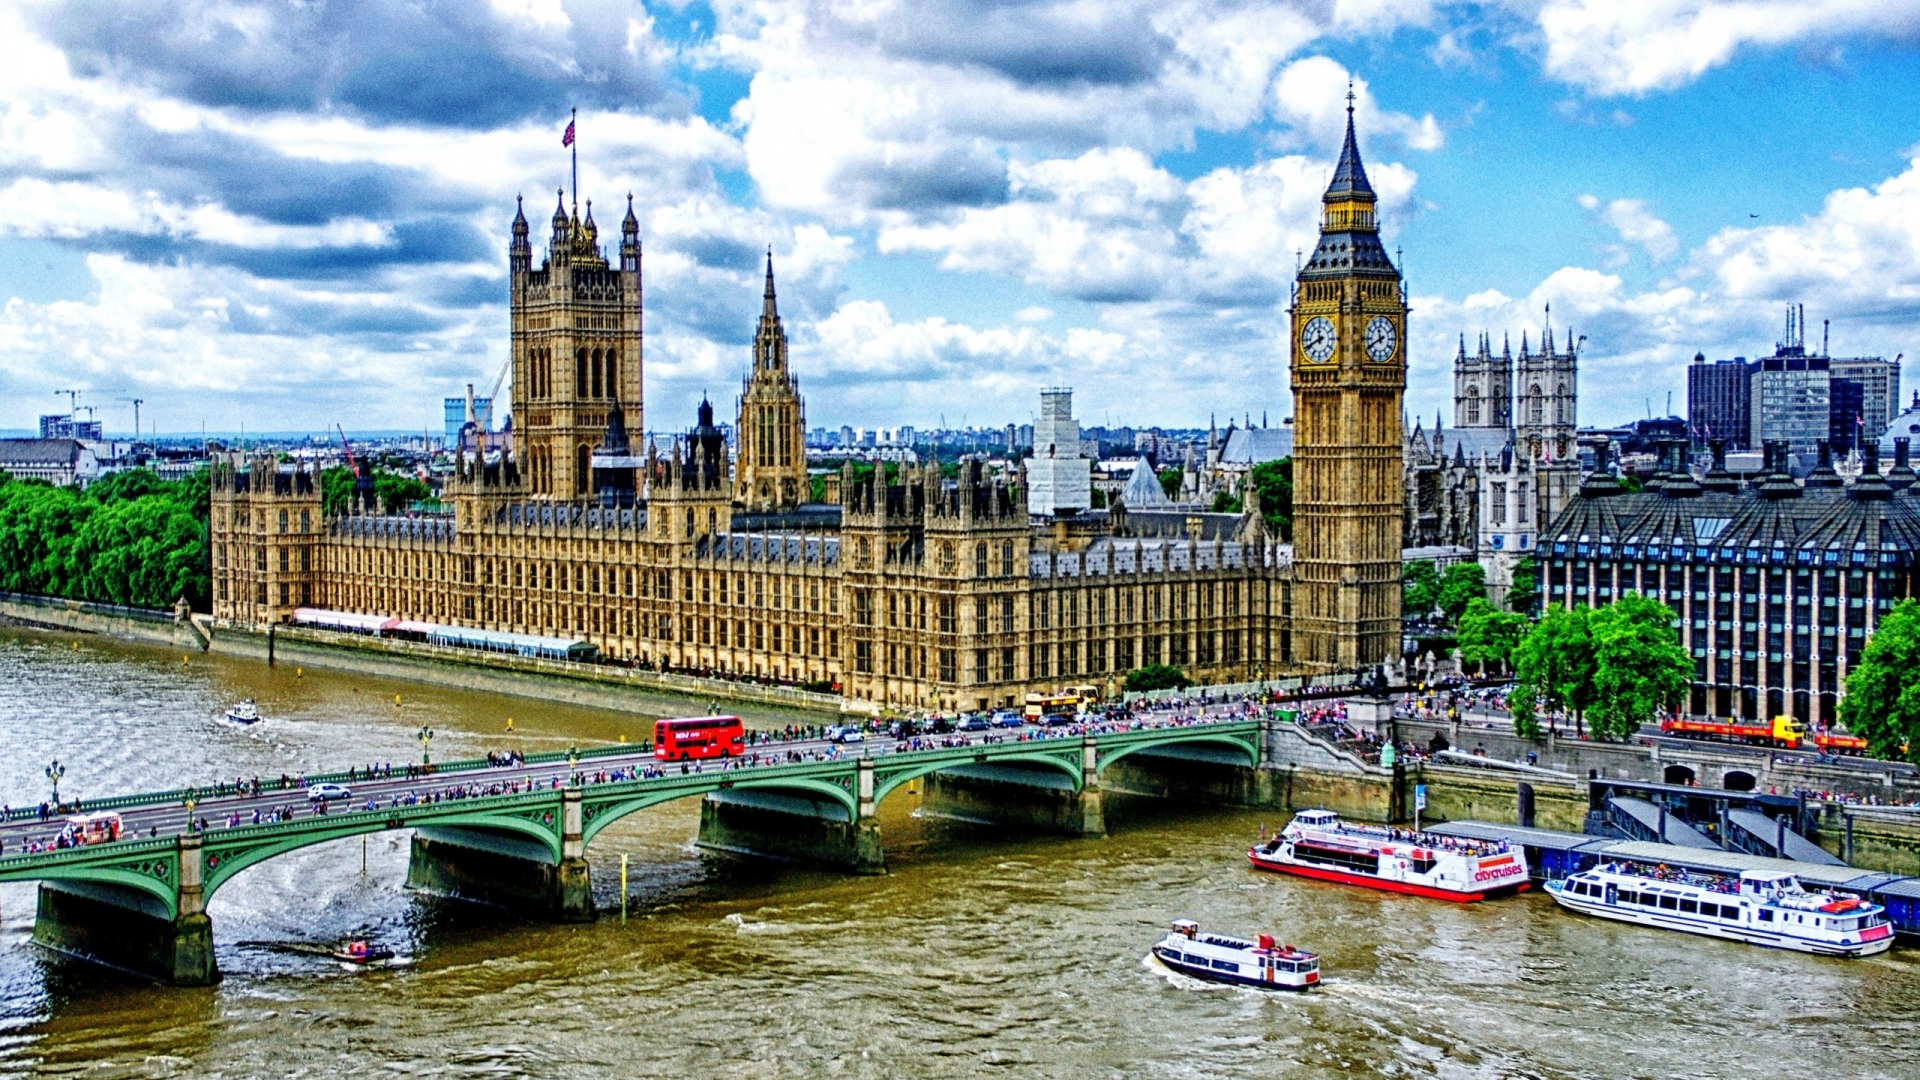 Westminster Bridge London for 1920 x 1080 HDTV 1080p resolution